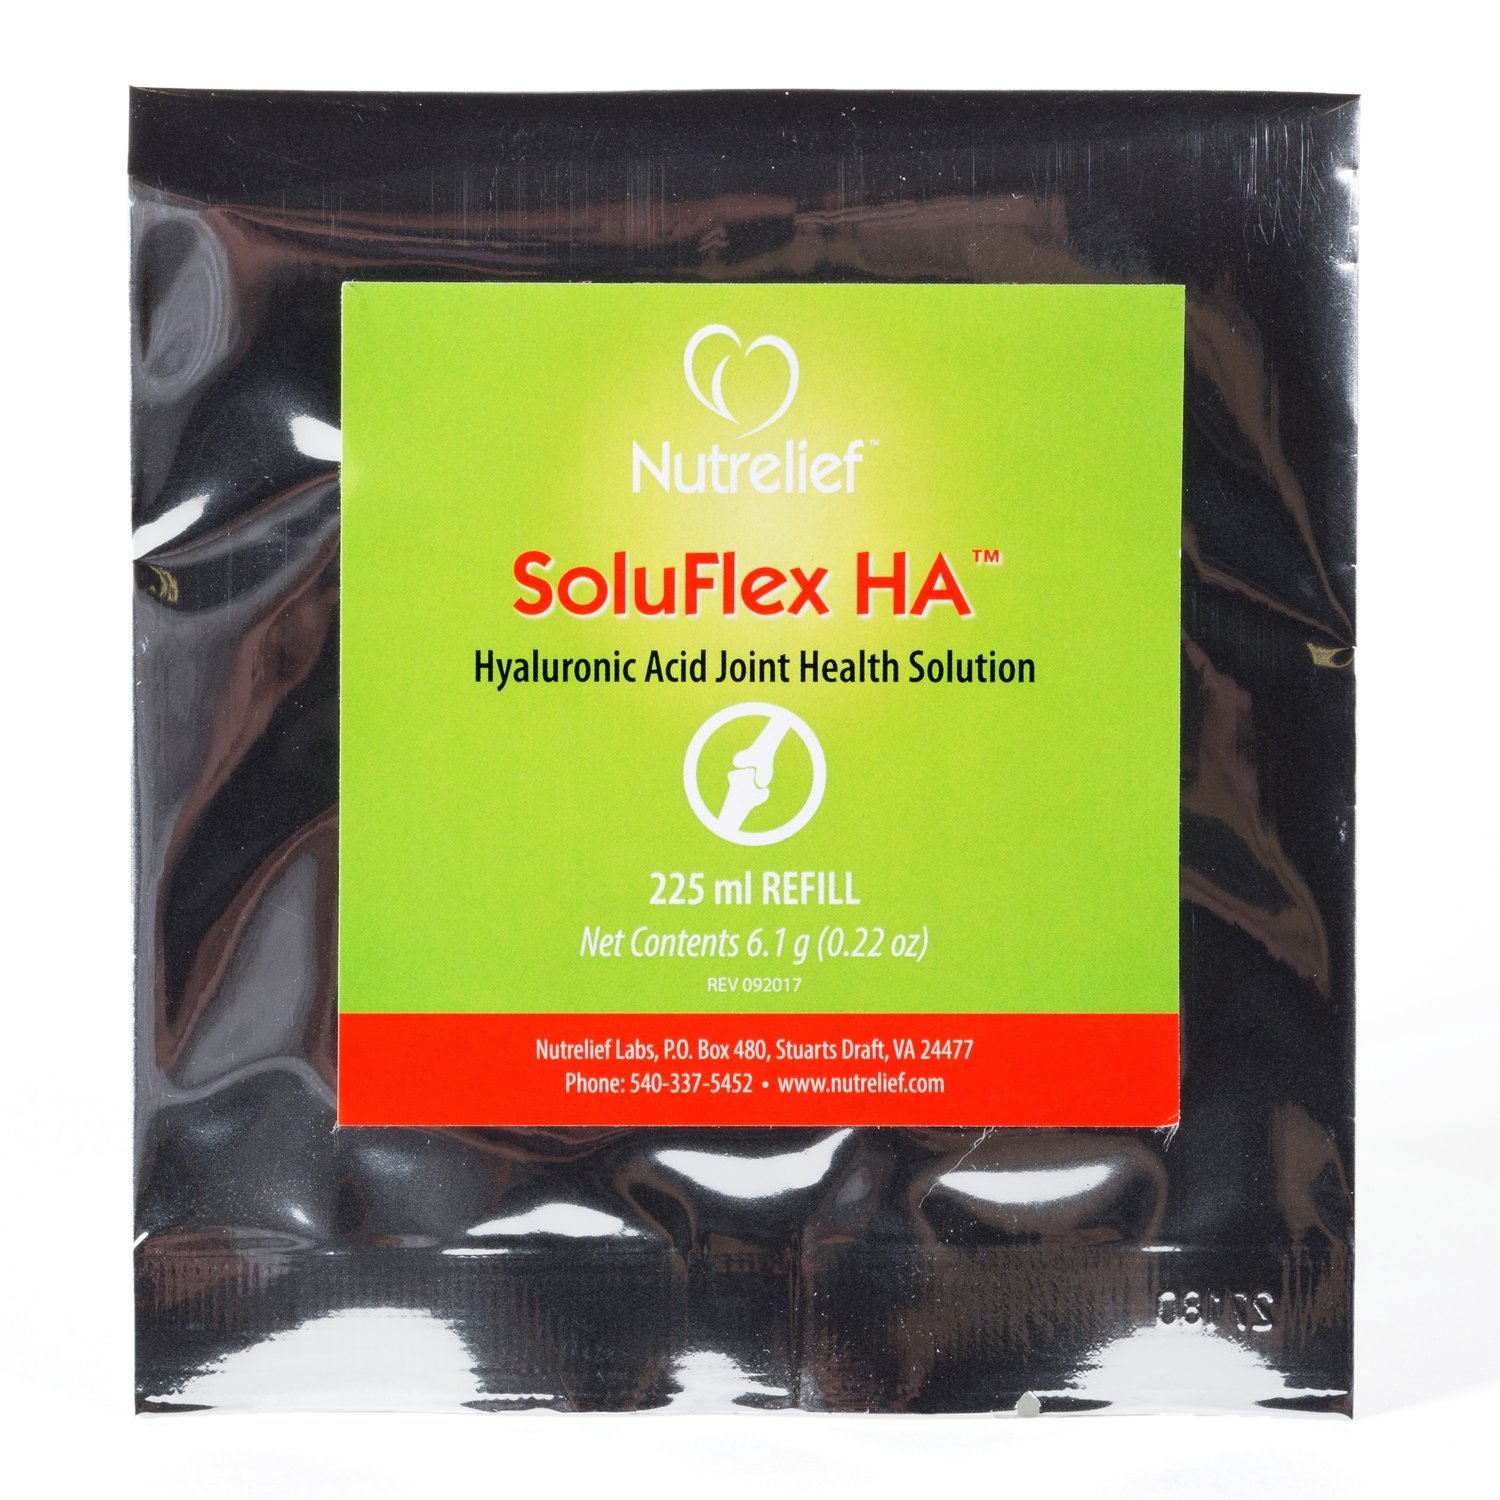 Soluflex HA refill packet (6.1g)